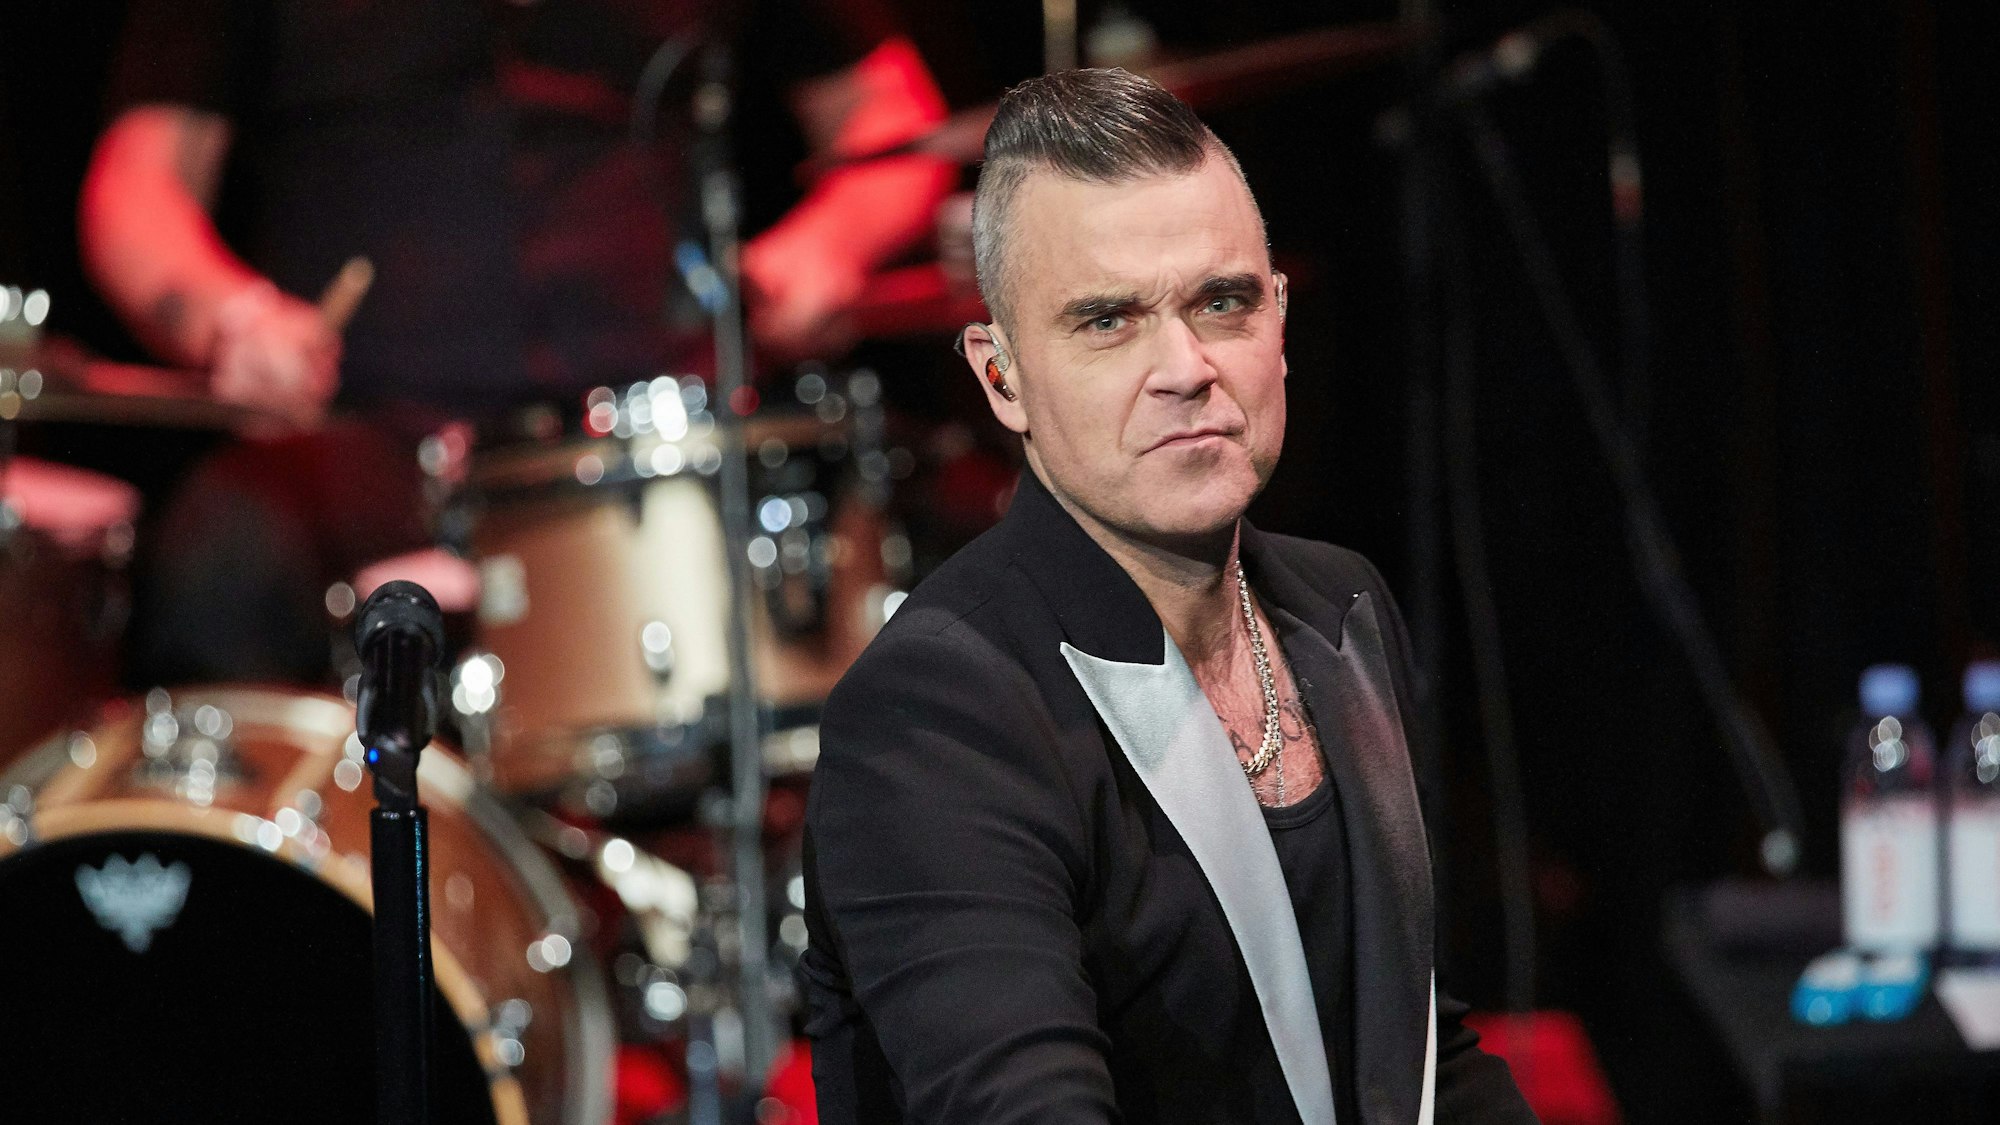 ARCHIV - 05.12.2019, Hamburg: Der Sänger Robbie Williams steht auf der Bühne